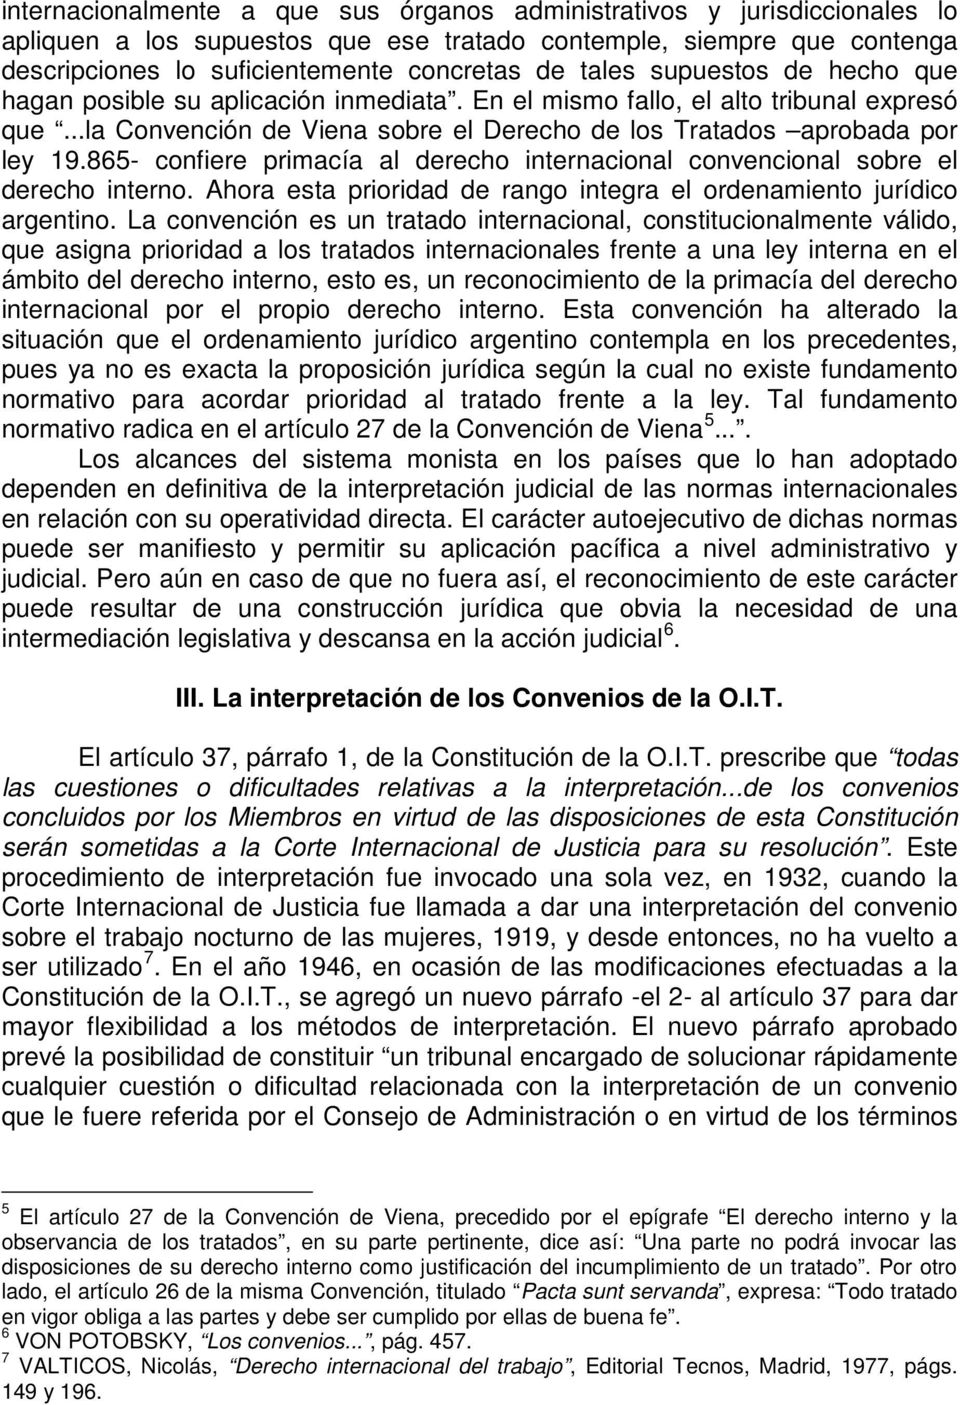 865- confiere primacía al derecho internacional convencional sobre el derecho interno. Ahora esta prioridad de rango integra el ordenamiento jurídico argentino.